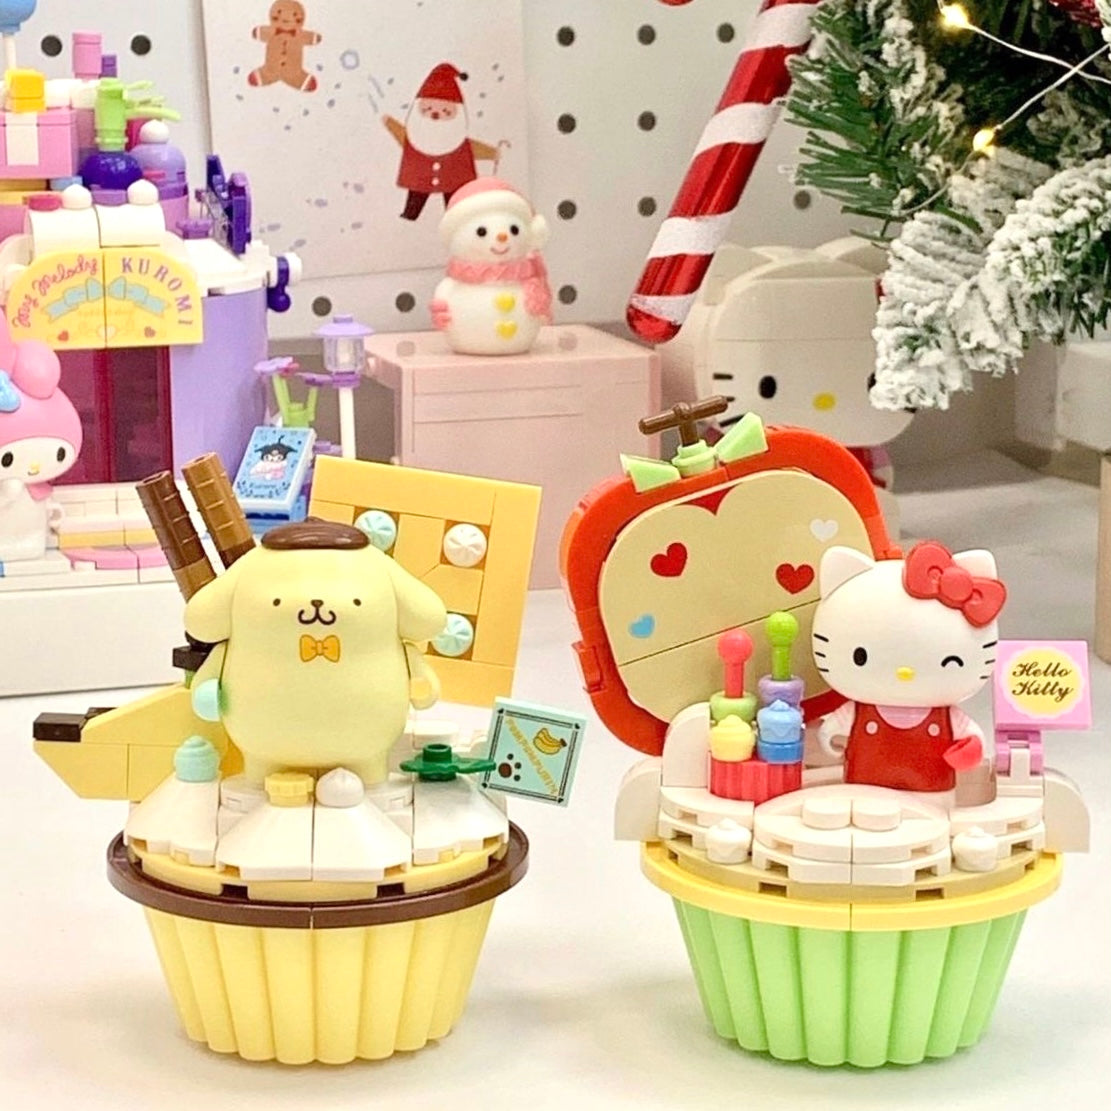 Hello Kitty Apple Cupcake Building Blocks Toy Sanrio Cup cakes Mini Bricks  Cake